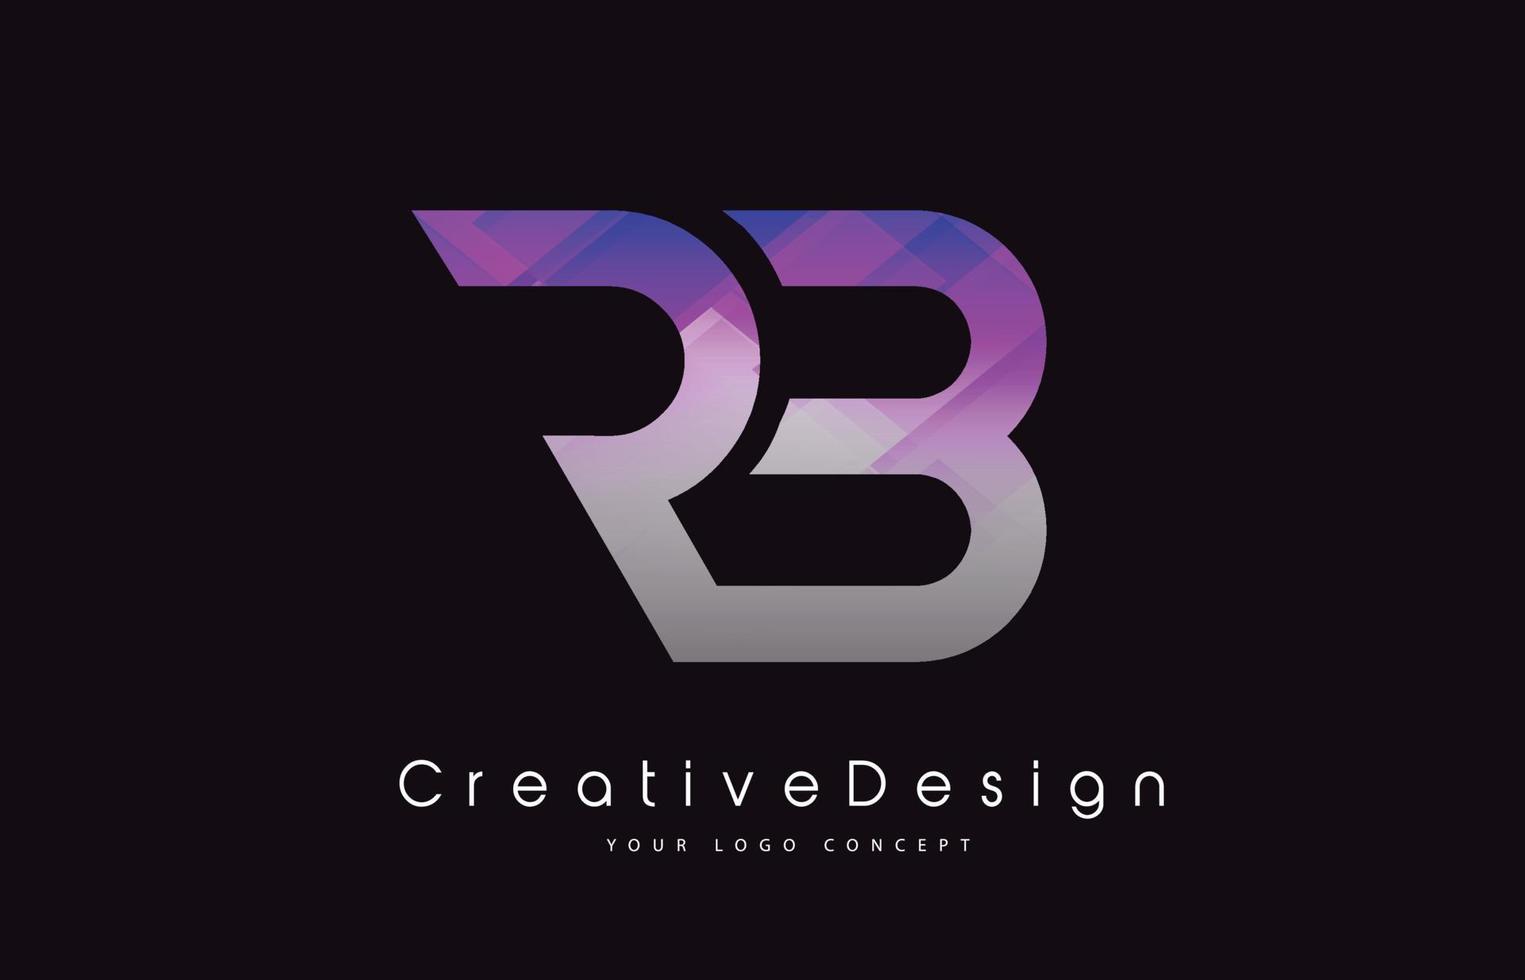 disegno del logo della lettera rb. trama viola icona creativa lettere moderne logo vettoriale. vettore